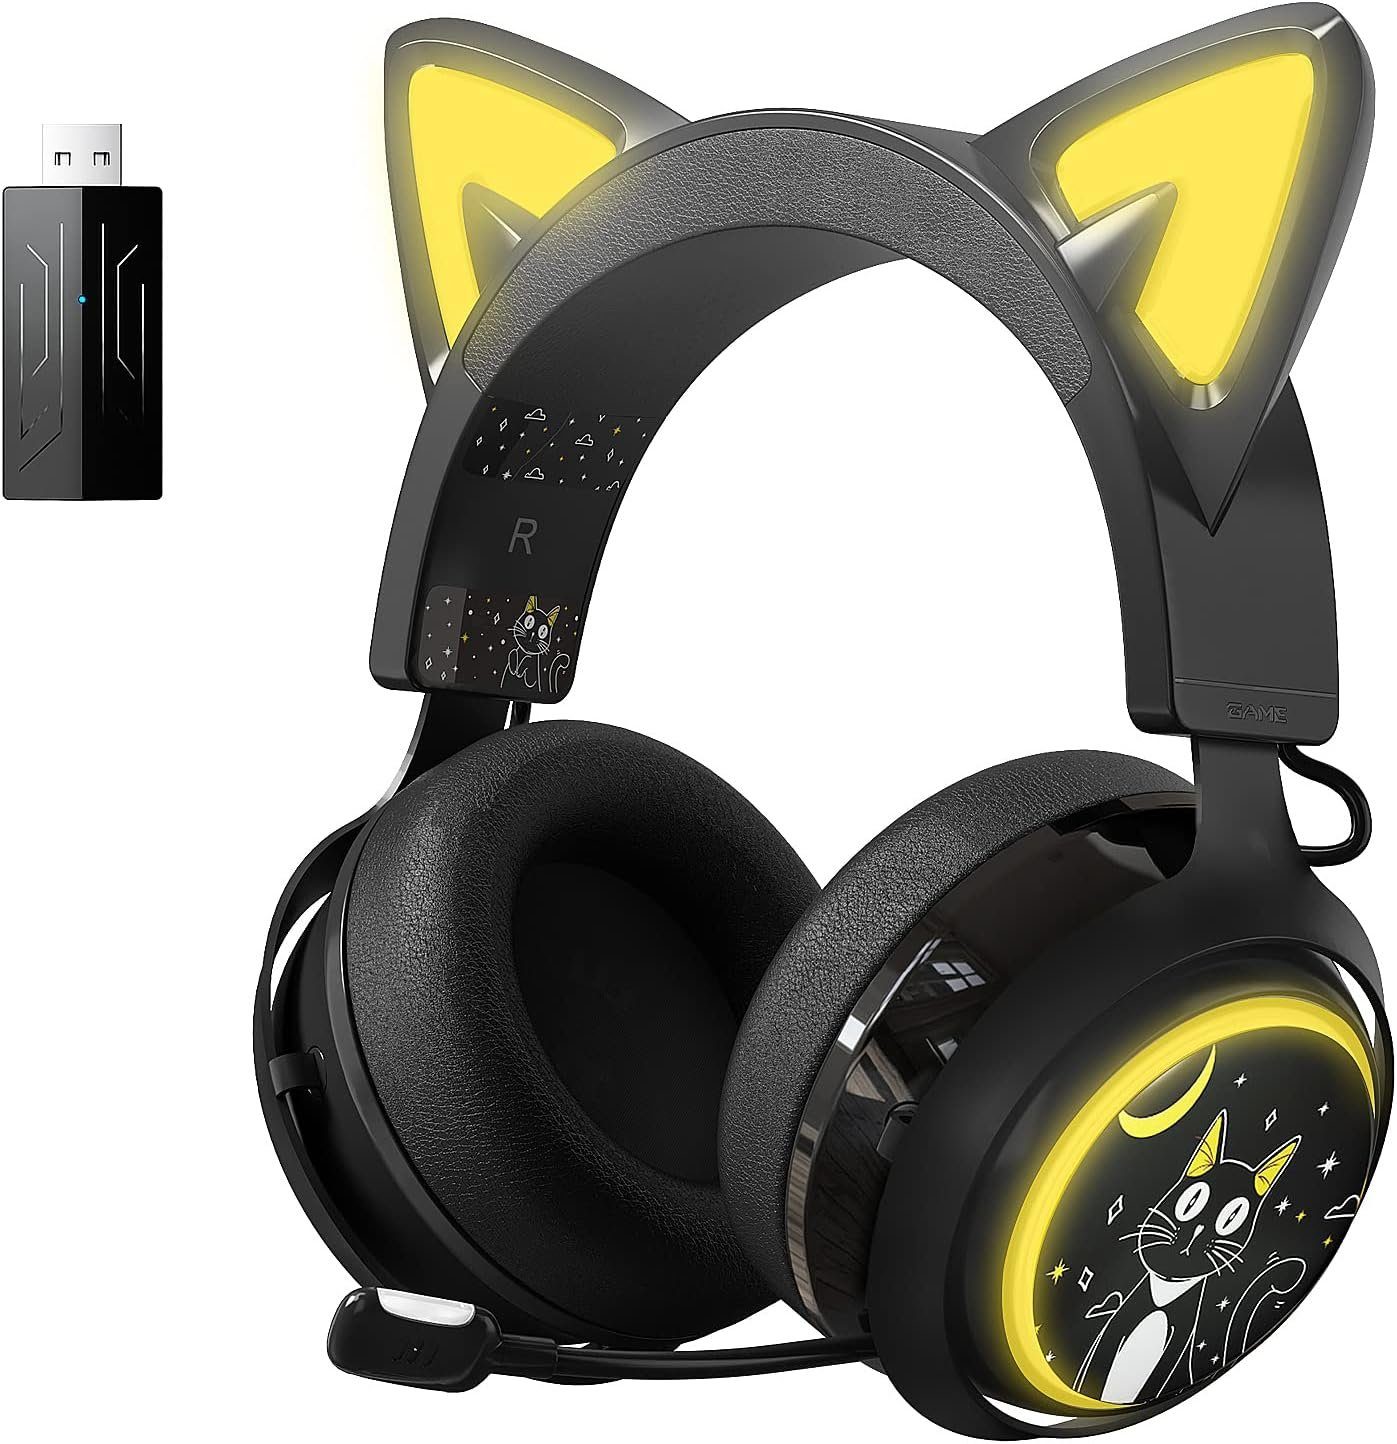 Dringender Sonderverkauf Somikon Gaming-Headset (Eingebautes für Cat-Ears) , Sprachkommunikation 7.1 Mikrofon Sound "Drahtloses Surround während Rauschunterdrückung mit und klare mit des Spielens. Gaming-Headset